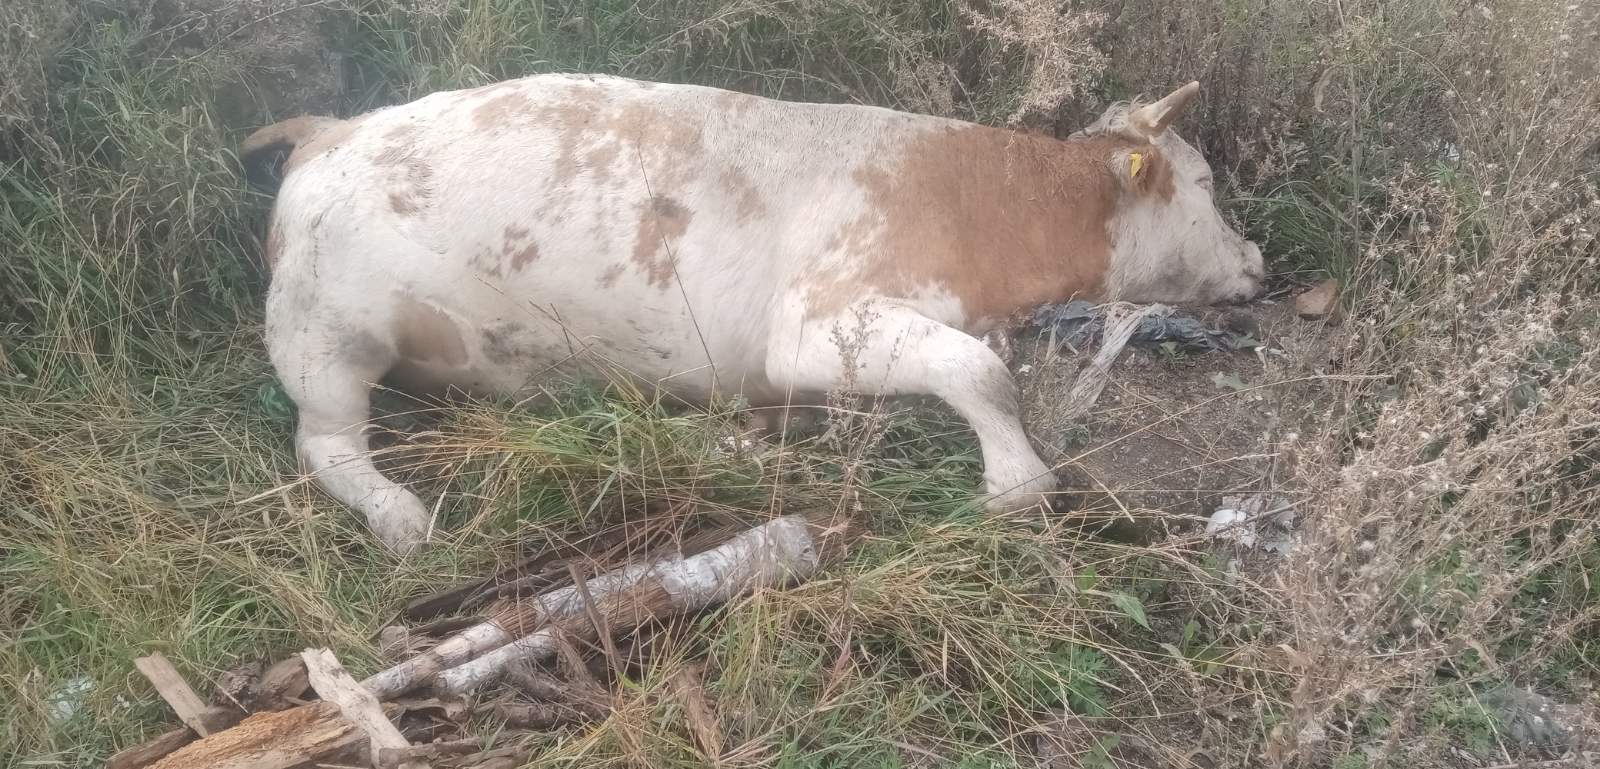 Фото В районе Бурятии коровы облизывали на свалке мертвого быка